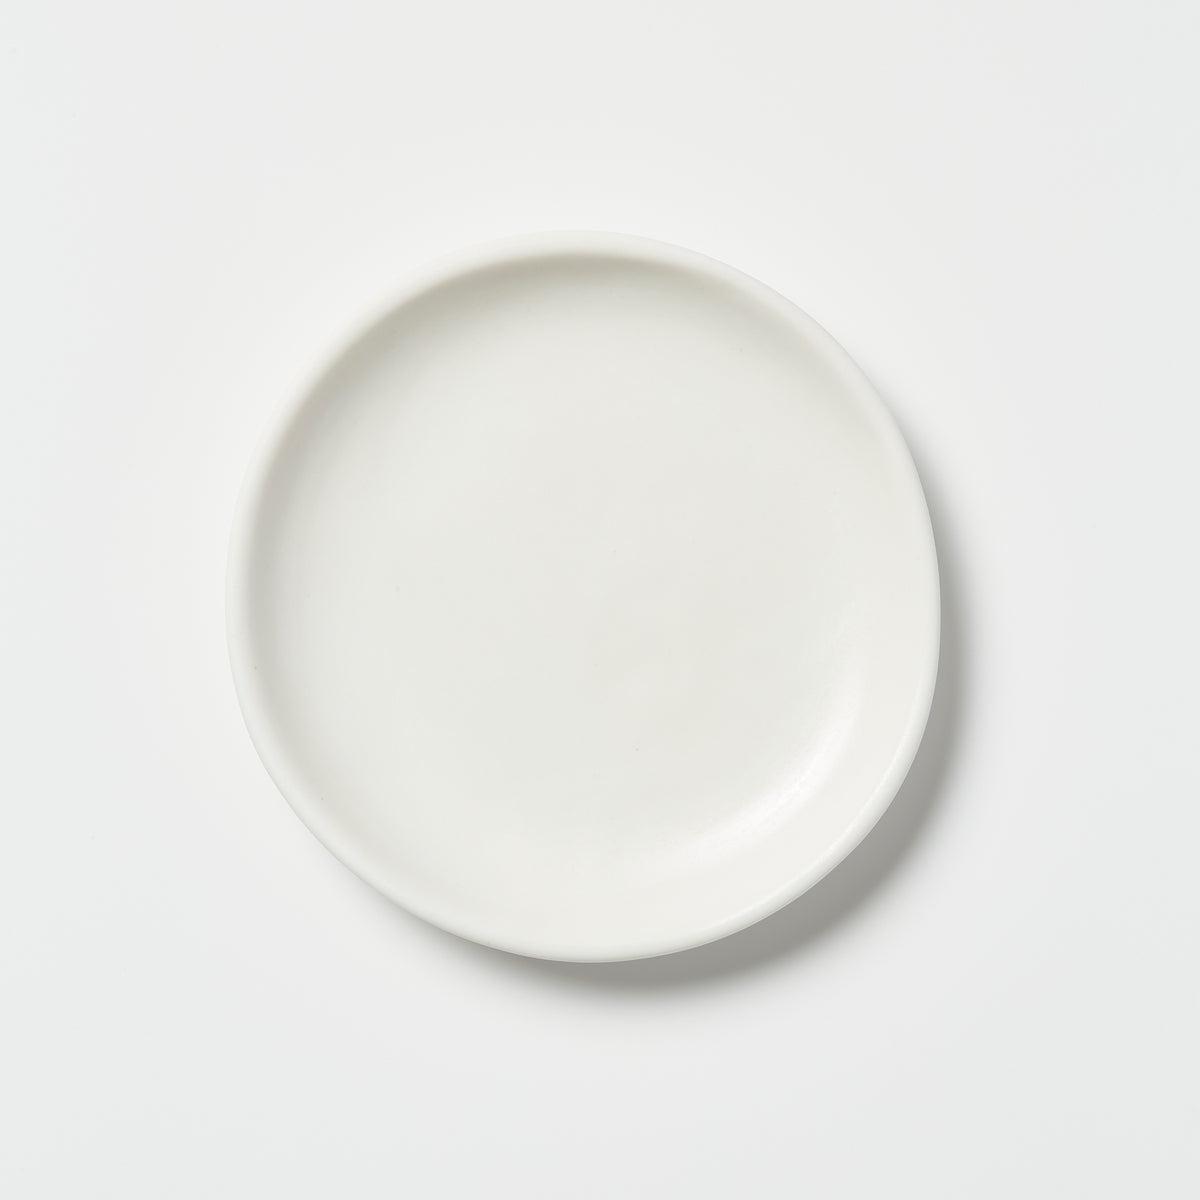 Studio Enti Small Dish White